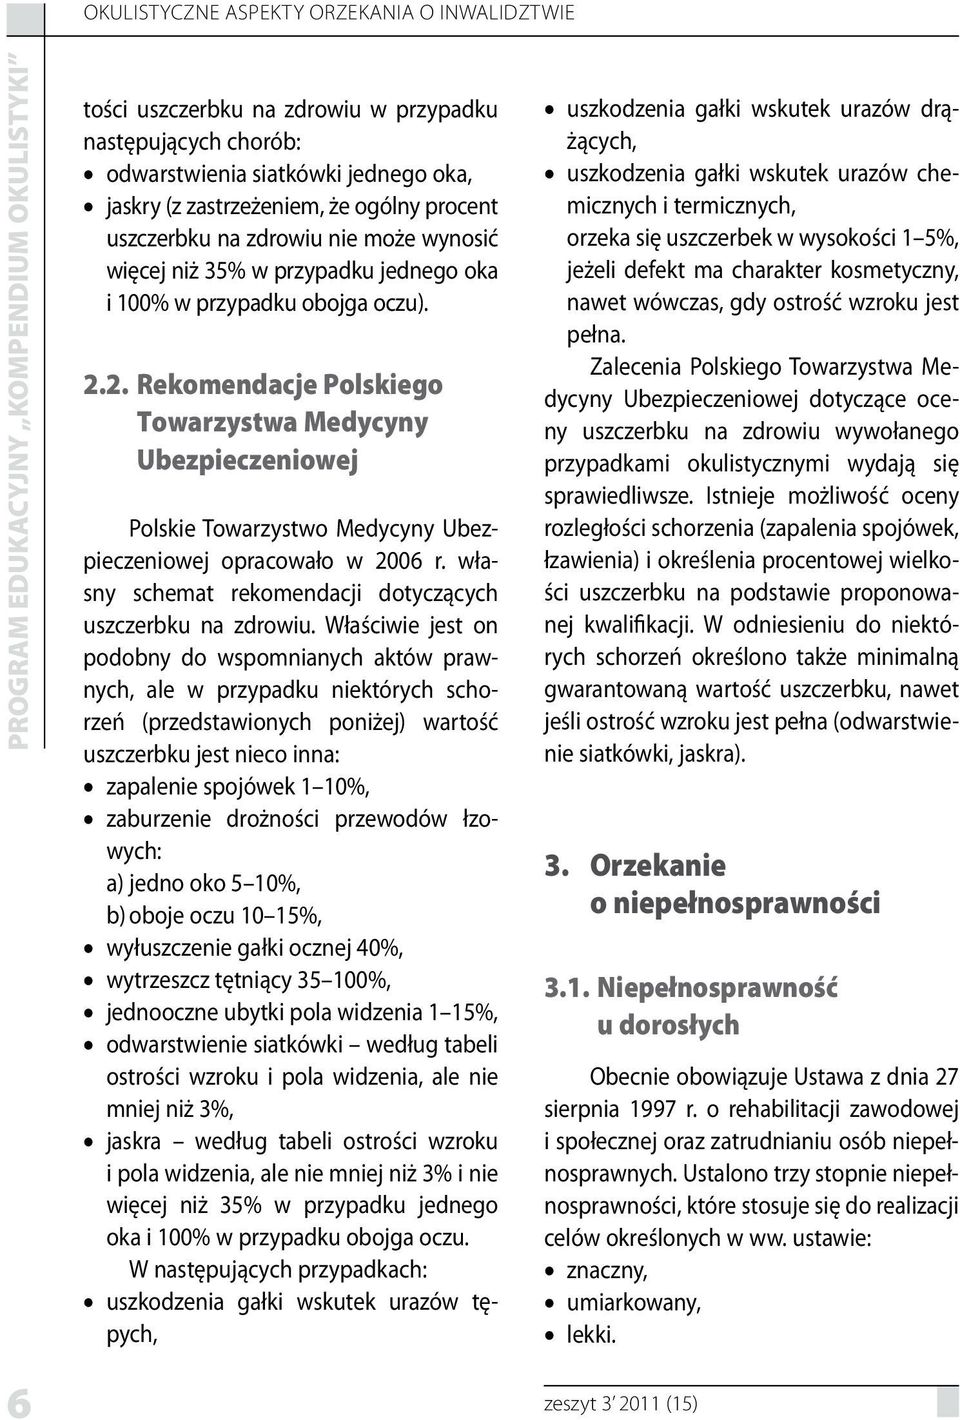 2. Rekomendacje Polskiego Towarzystwa Medycyny Ubezpieczeniowej Polskie Towarzystwo Medycyny Ubezpieczeniowej opracowało w 2006 r. własny schemat rekomendacji dotyczących uszczerbku na zdrowiu.